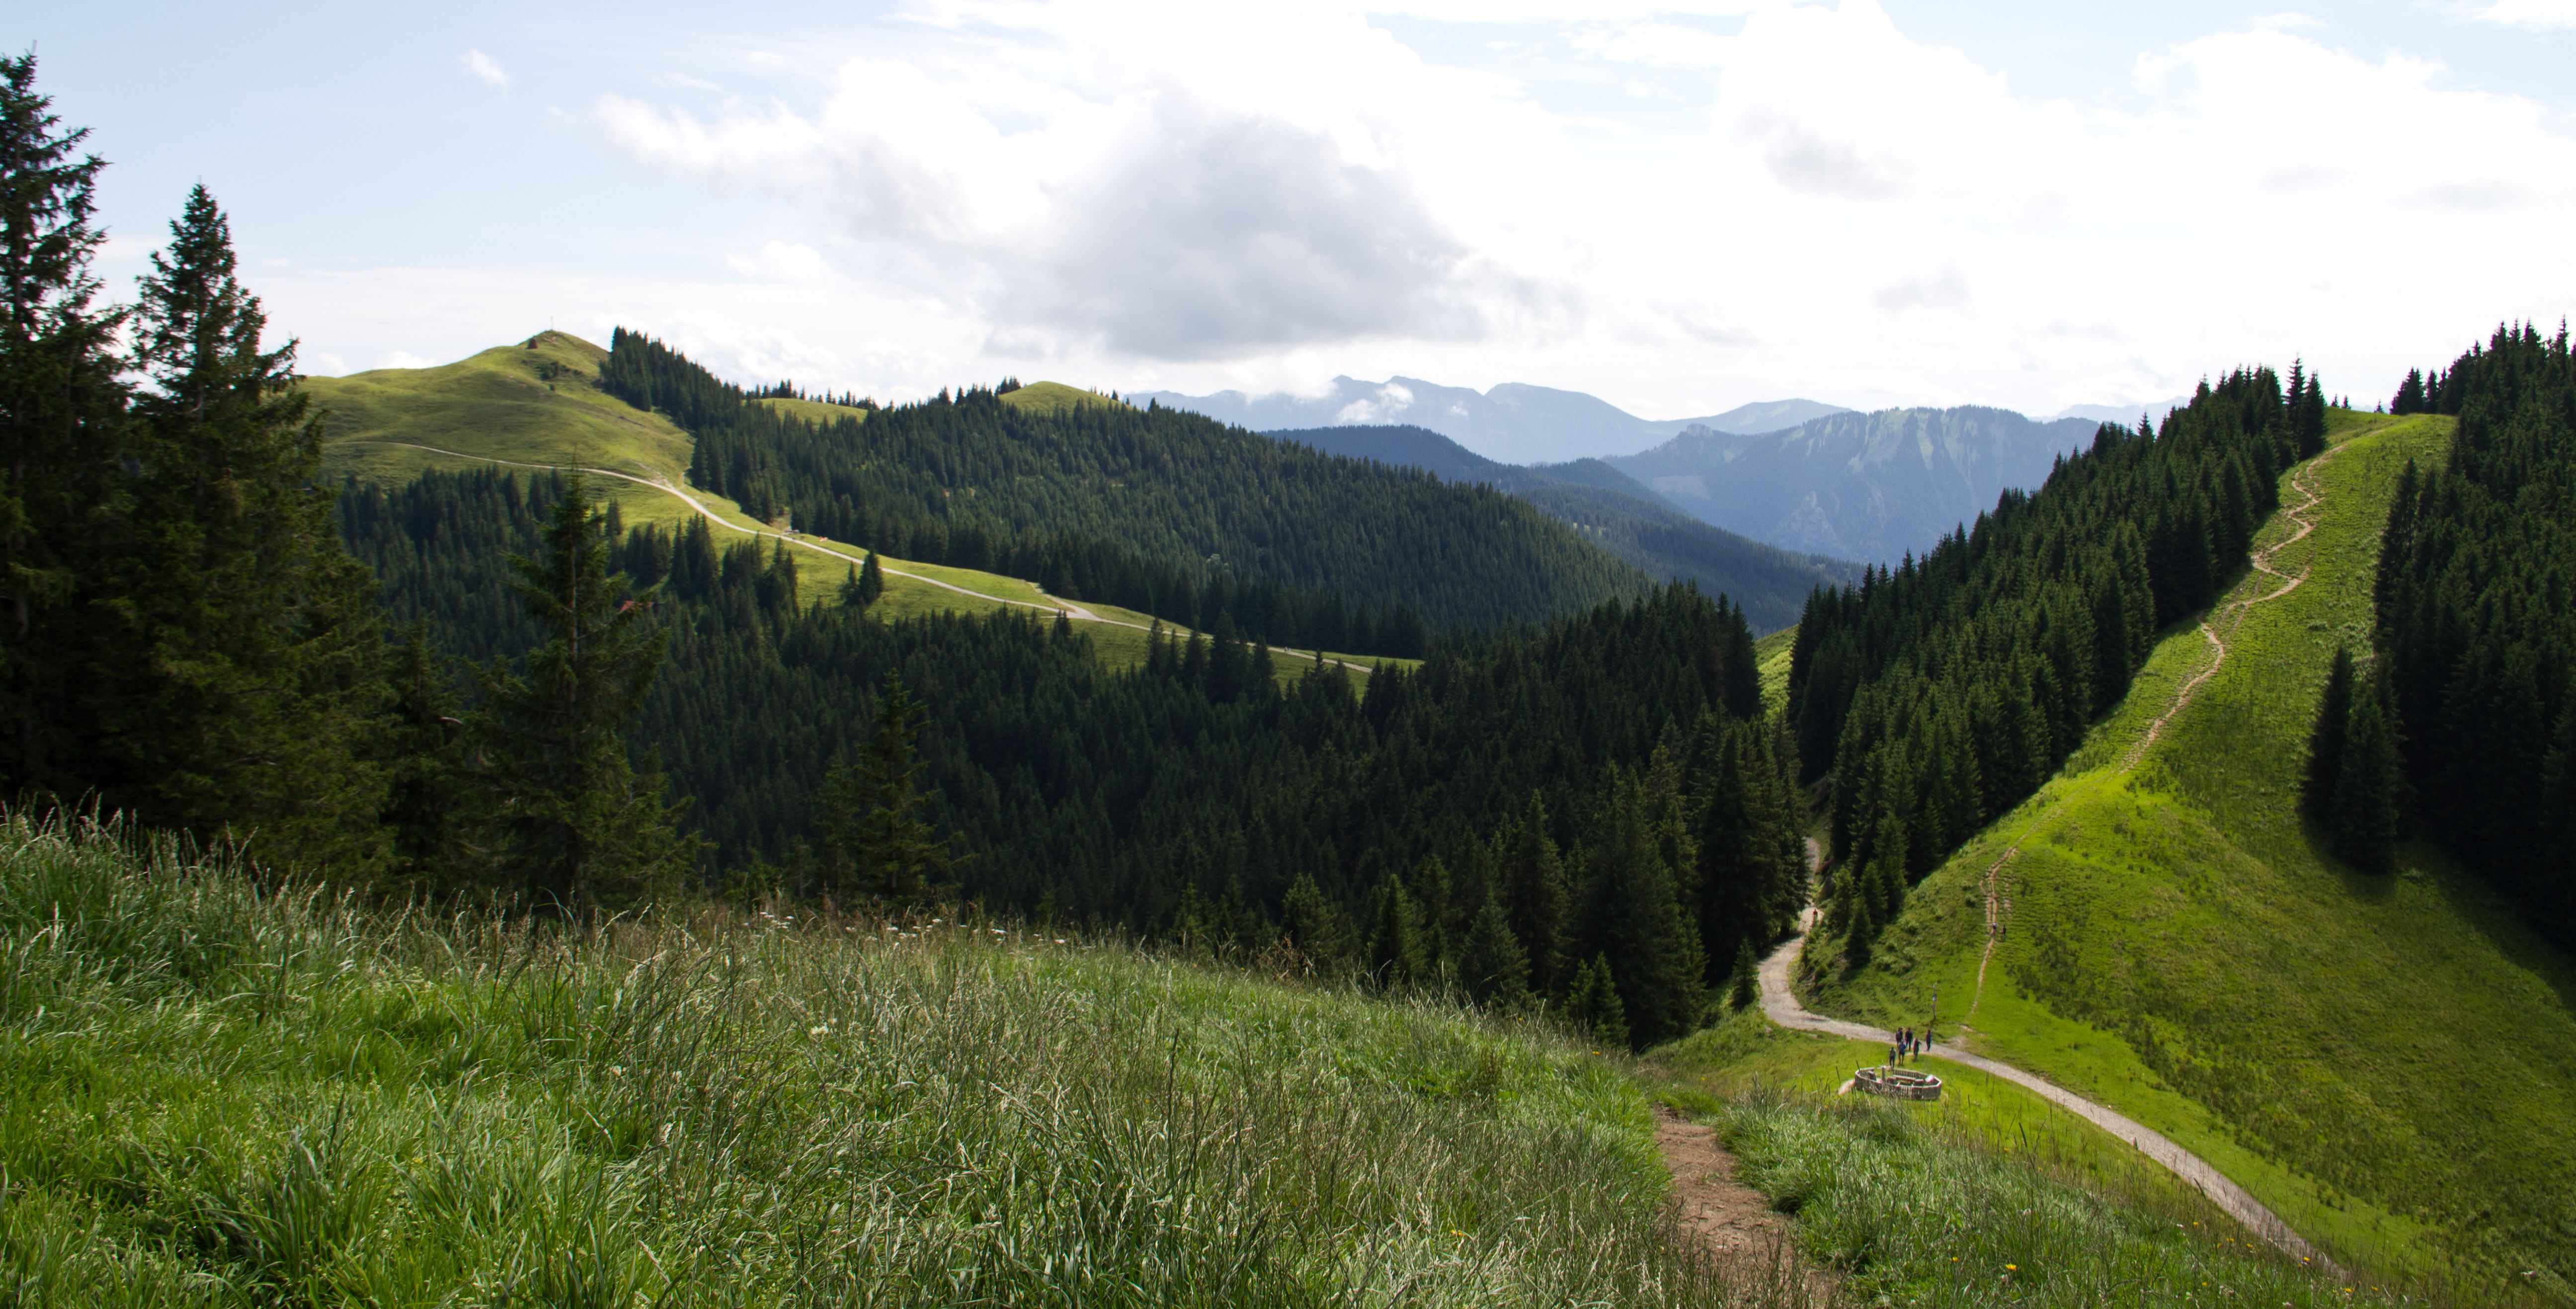 Blick vom vorderen auf das mittlere (rechts) und hintere (links) Hörnle, dahinter die Alpen